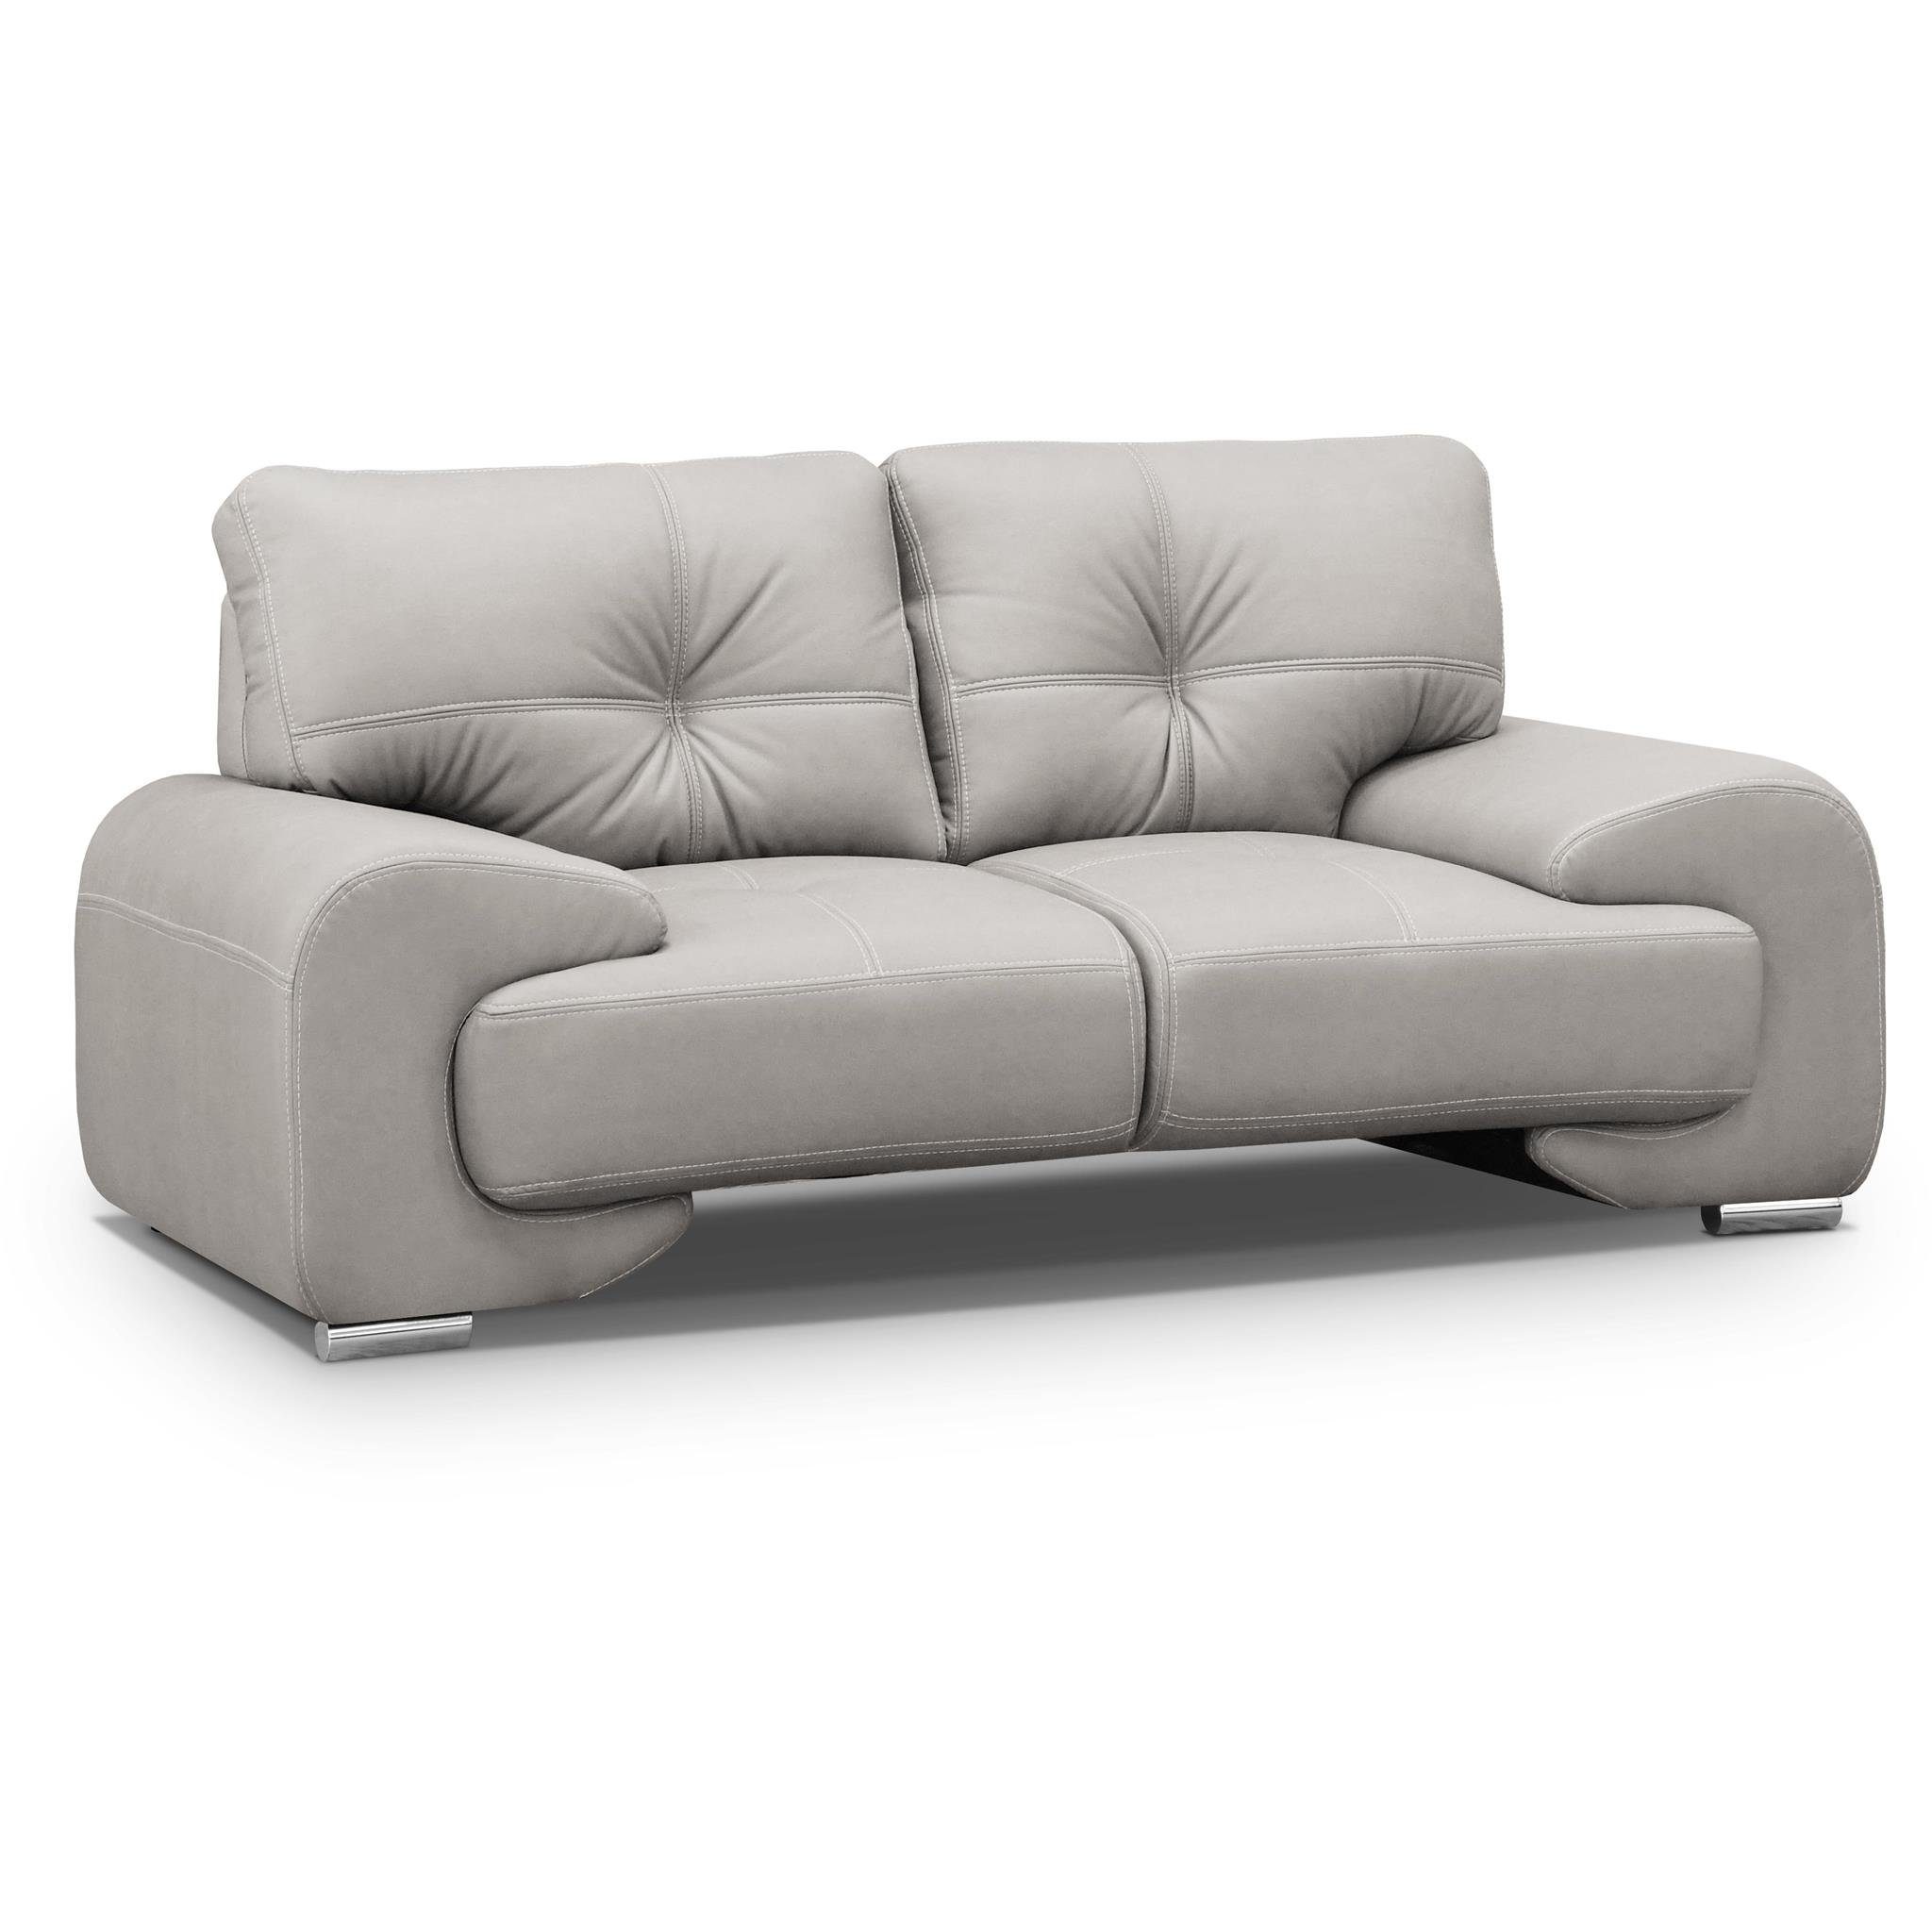 Beige Beautysofa mit 2-Sitzer modernes (vega 02) im mit Kunstleder, Design dekorativen Sofa lux, 2-Sitzer Maxime Wellenunterfederung, Nähten aus